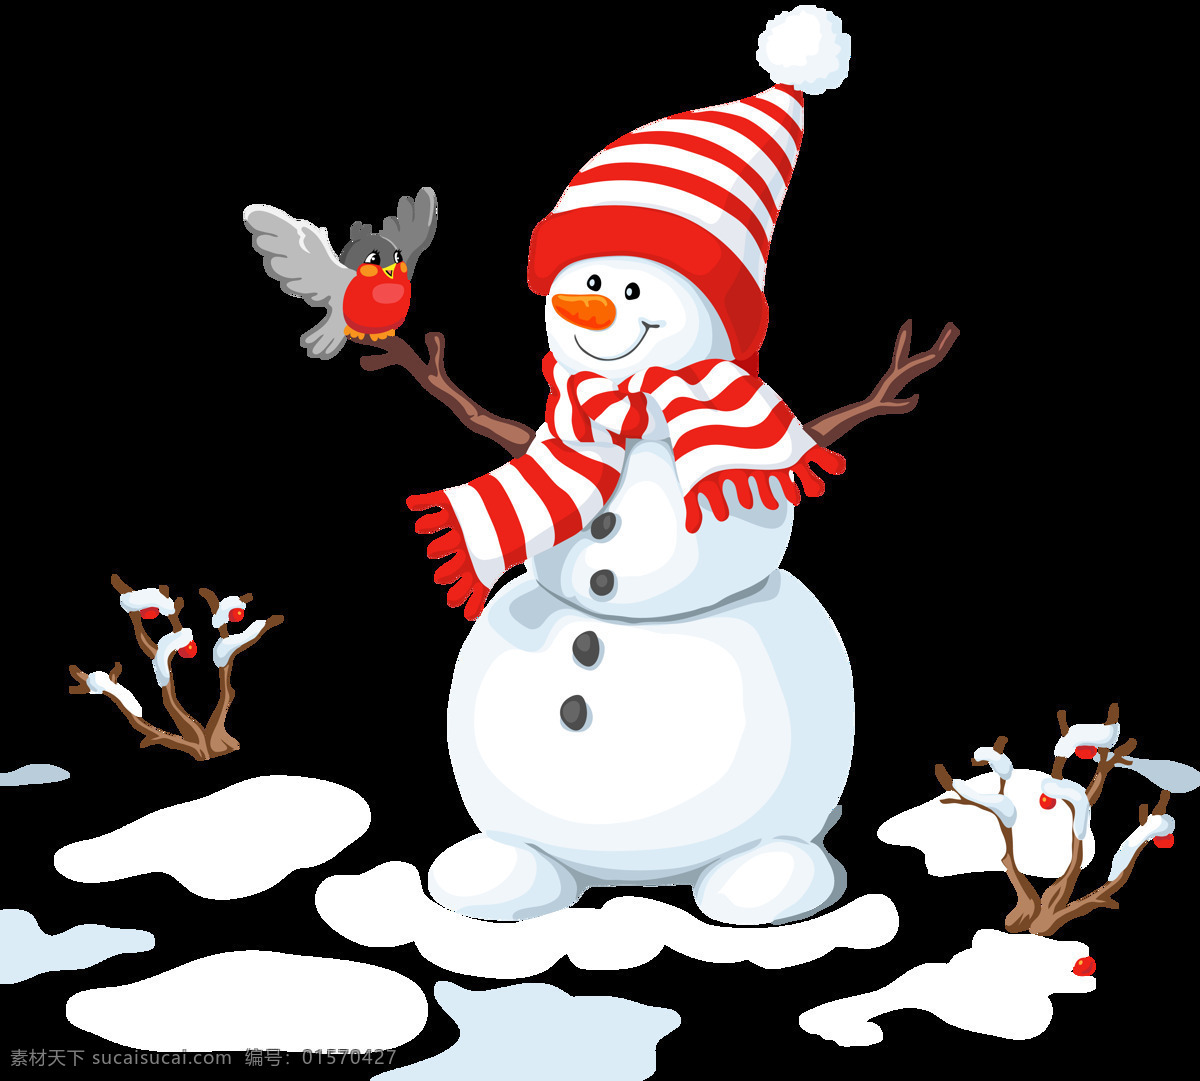 超 可爱 圣诞 雪人 元素 冬季元素 卡通雪人 可爱雪人 圣诞素材 圣诞雪人 圣诞元素下载 圣诞装扮 新年快乐 雪人元素